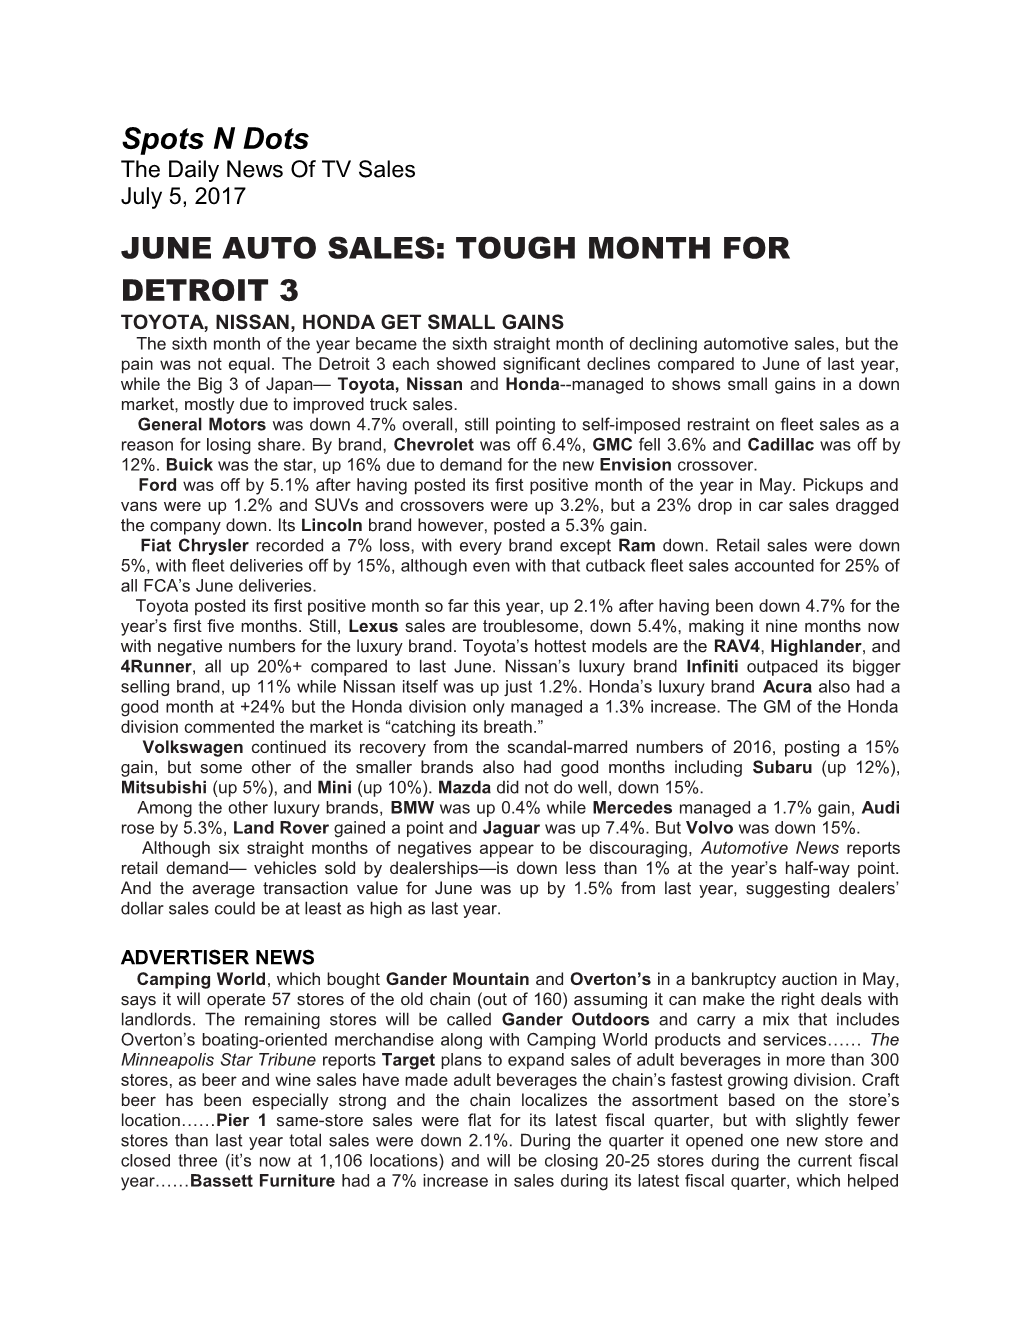 June Auto Sales: Tough Month for Detroit 3